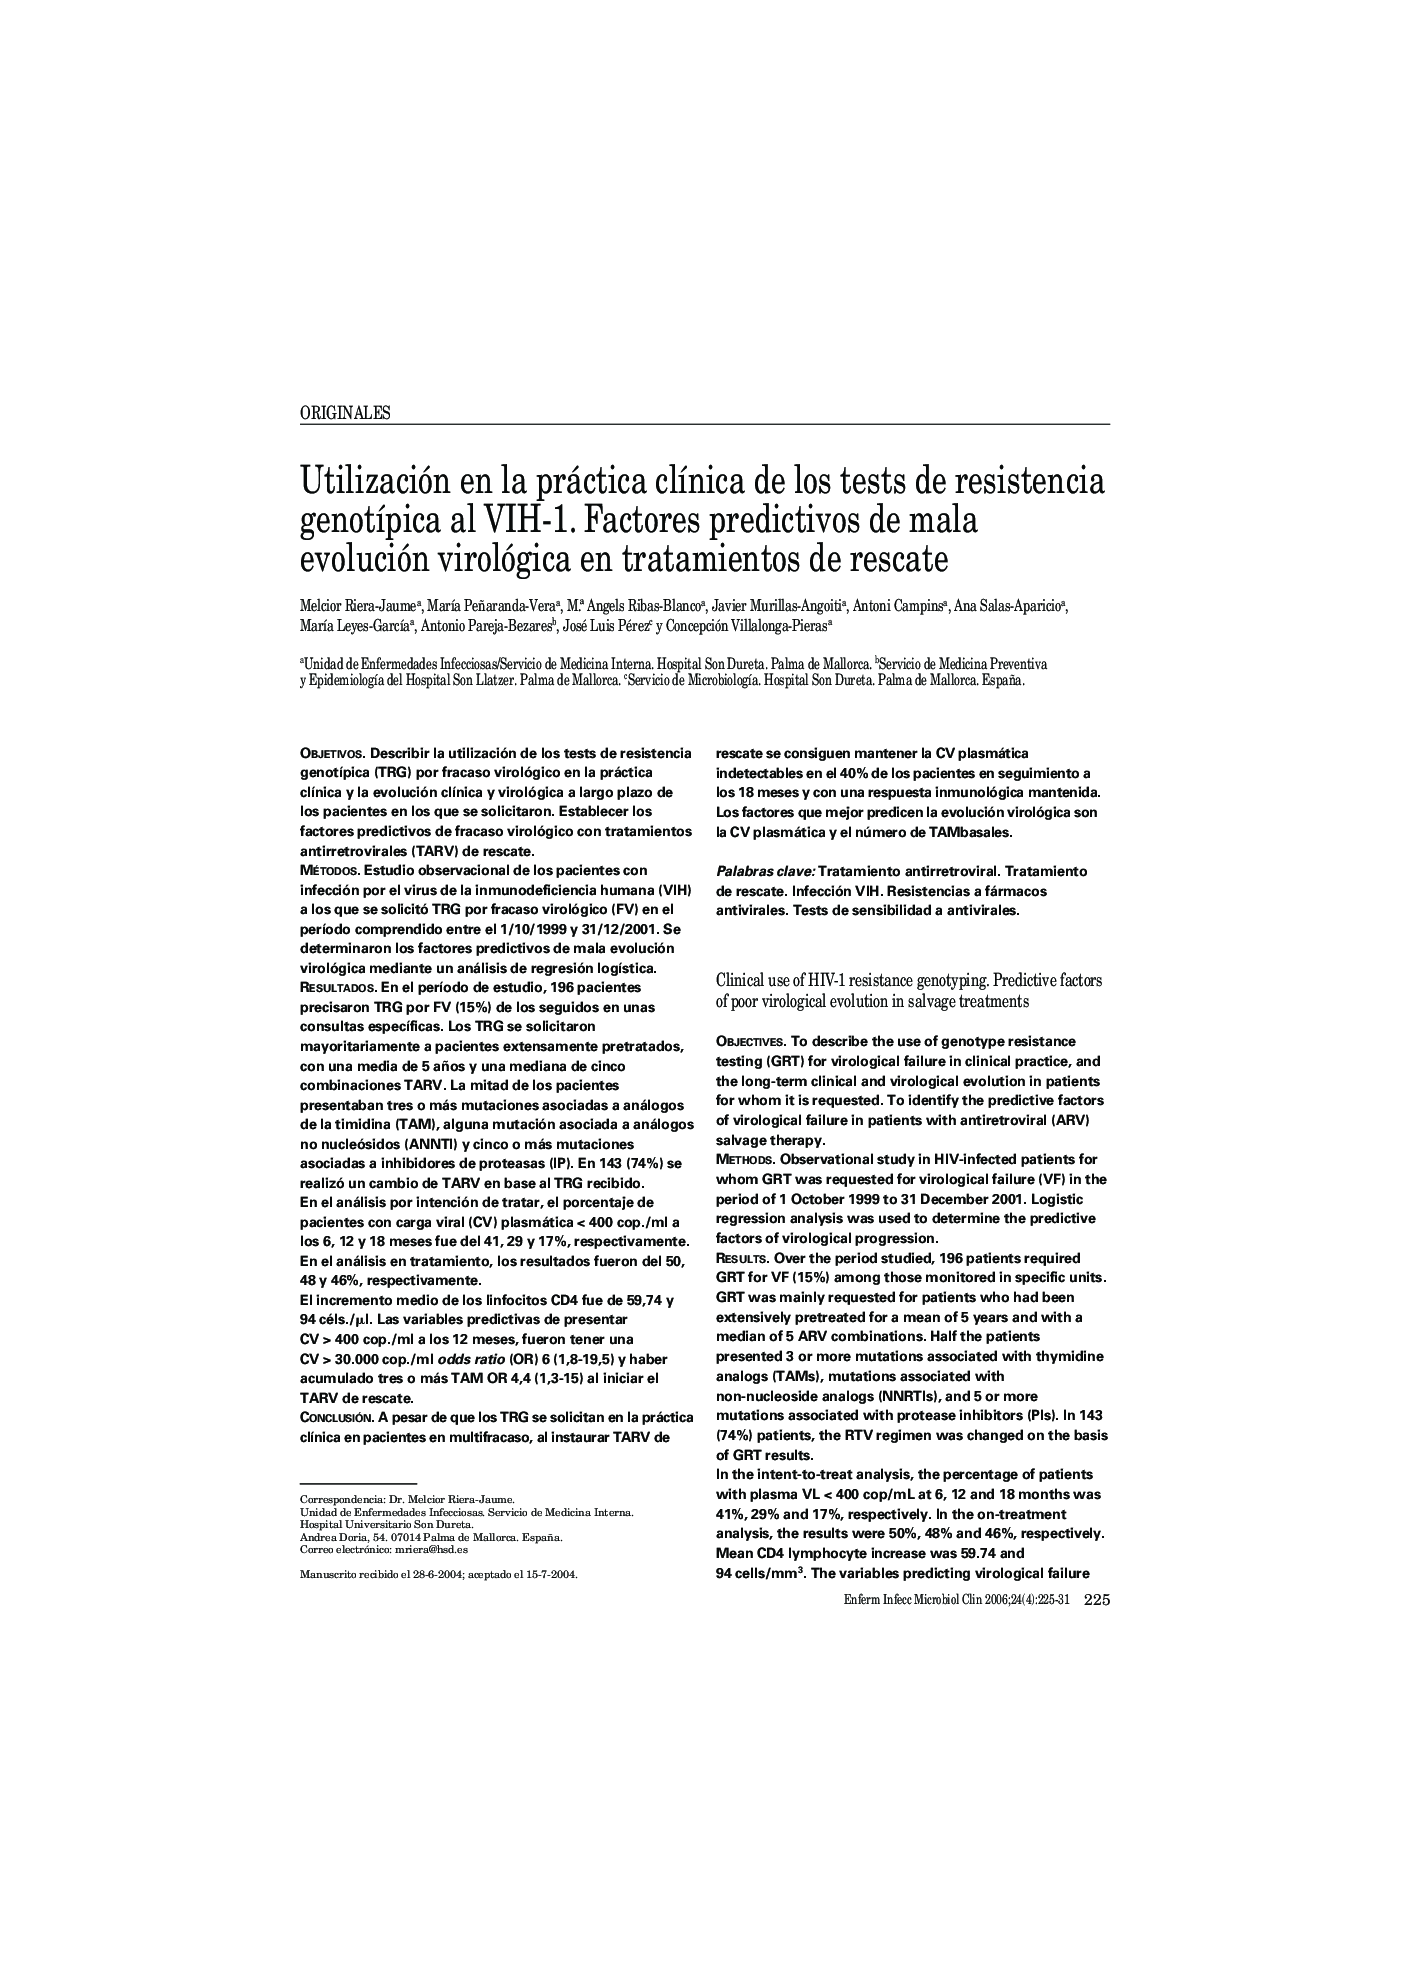 Utilización en la práctica clÃ­nica de los tests de resistencia genotÃ­pica al VIH-1. Factores predictivos de mala evolución virológica en tratamientos de rescate